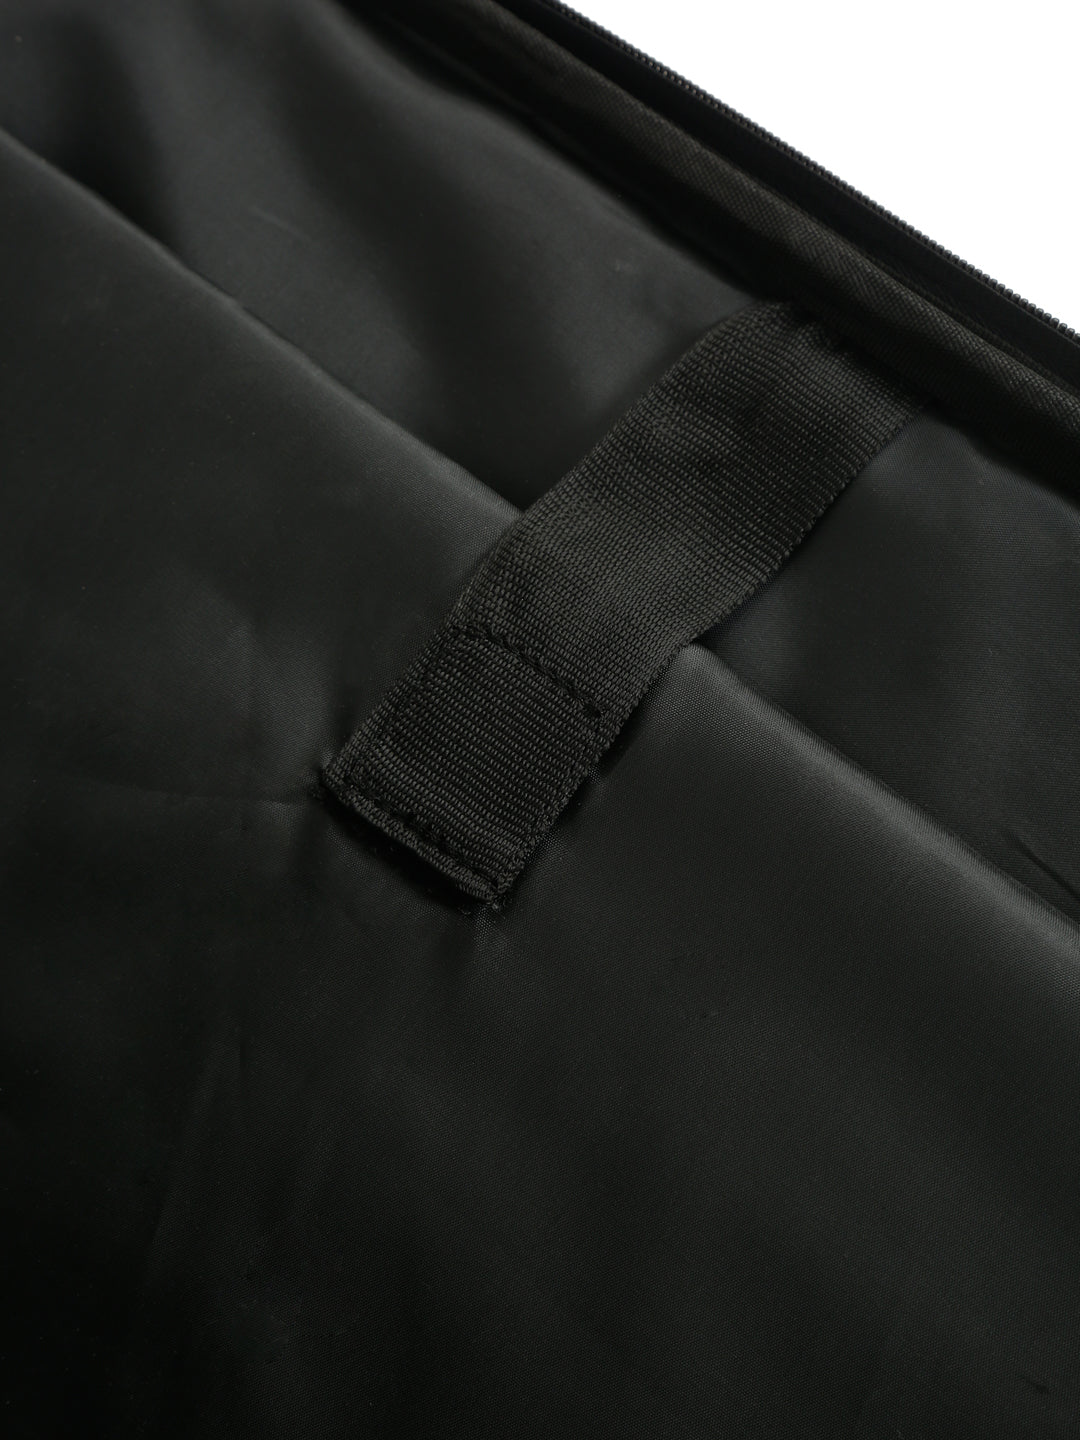 Teakwood Genuine Leather Unisex Bag – Teakwood Leathers